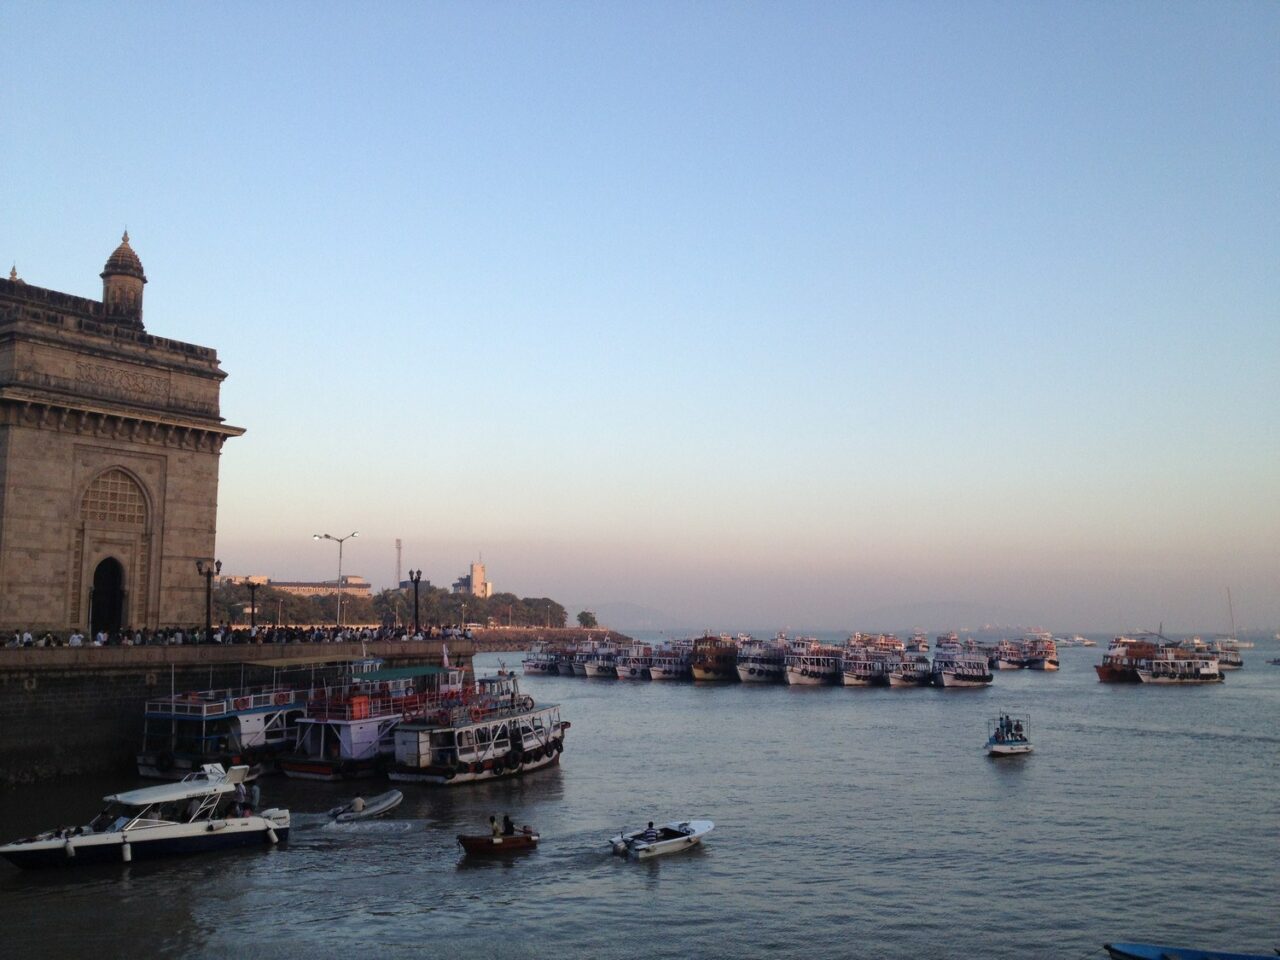 Mumbai Gateway of India Image